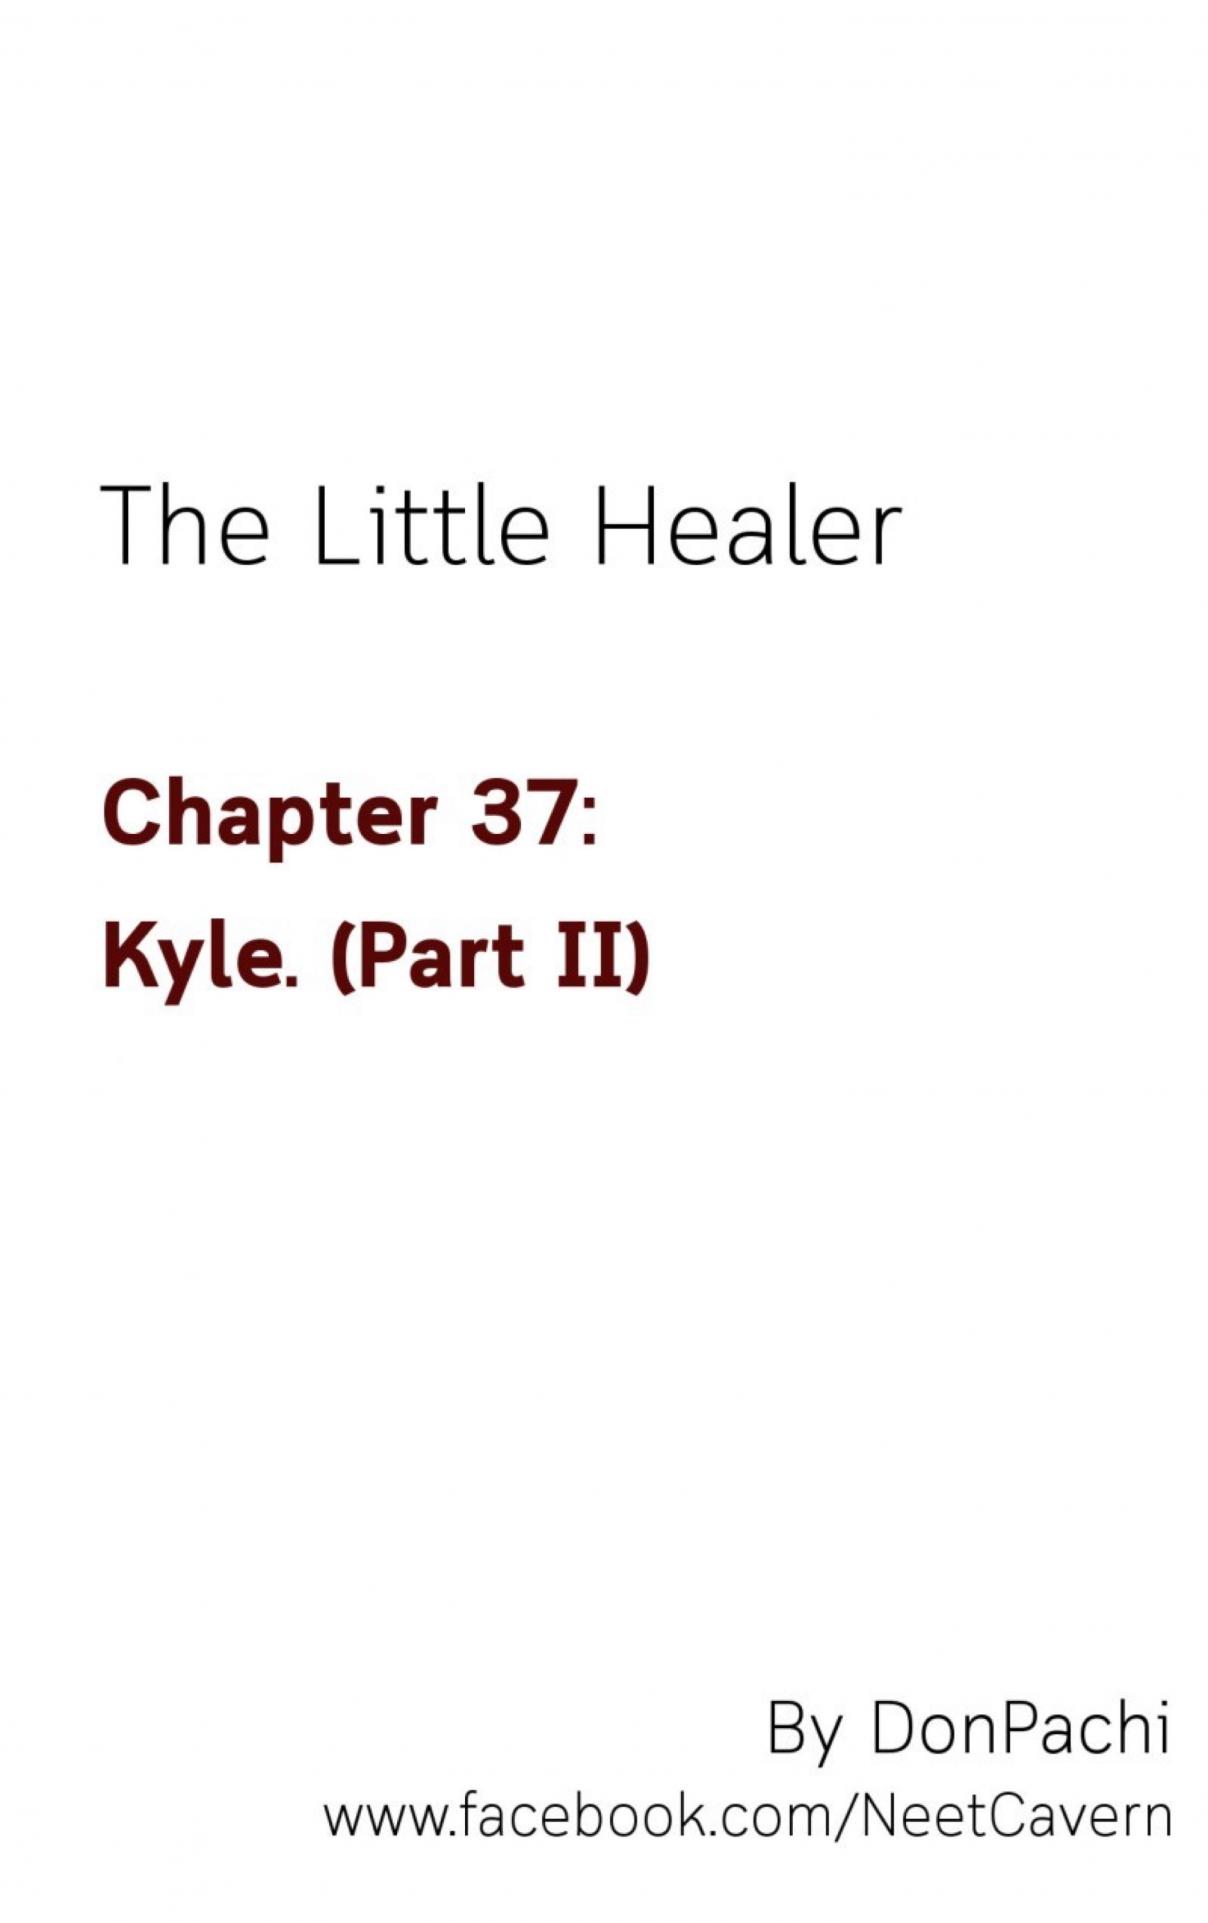 The Little Healer 37